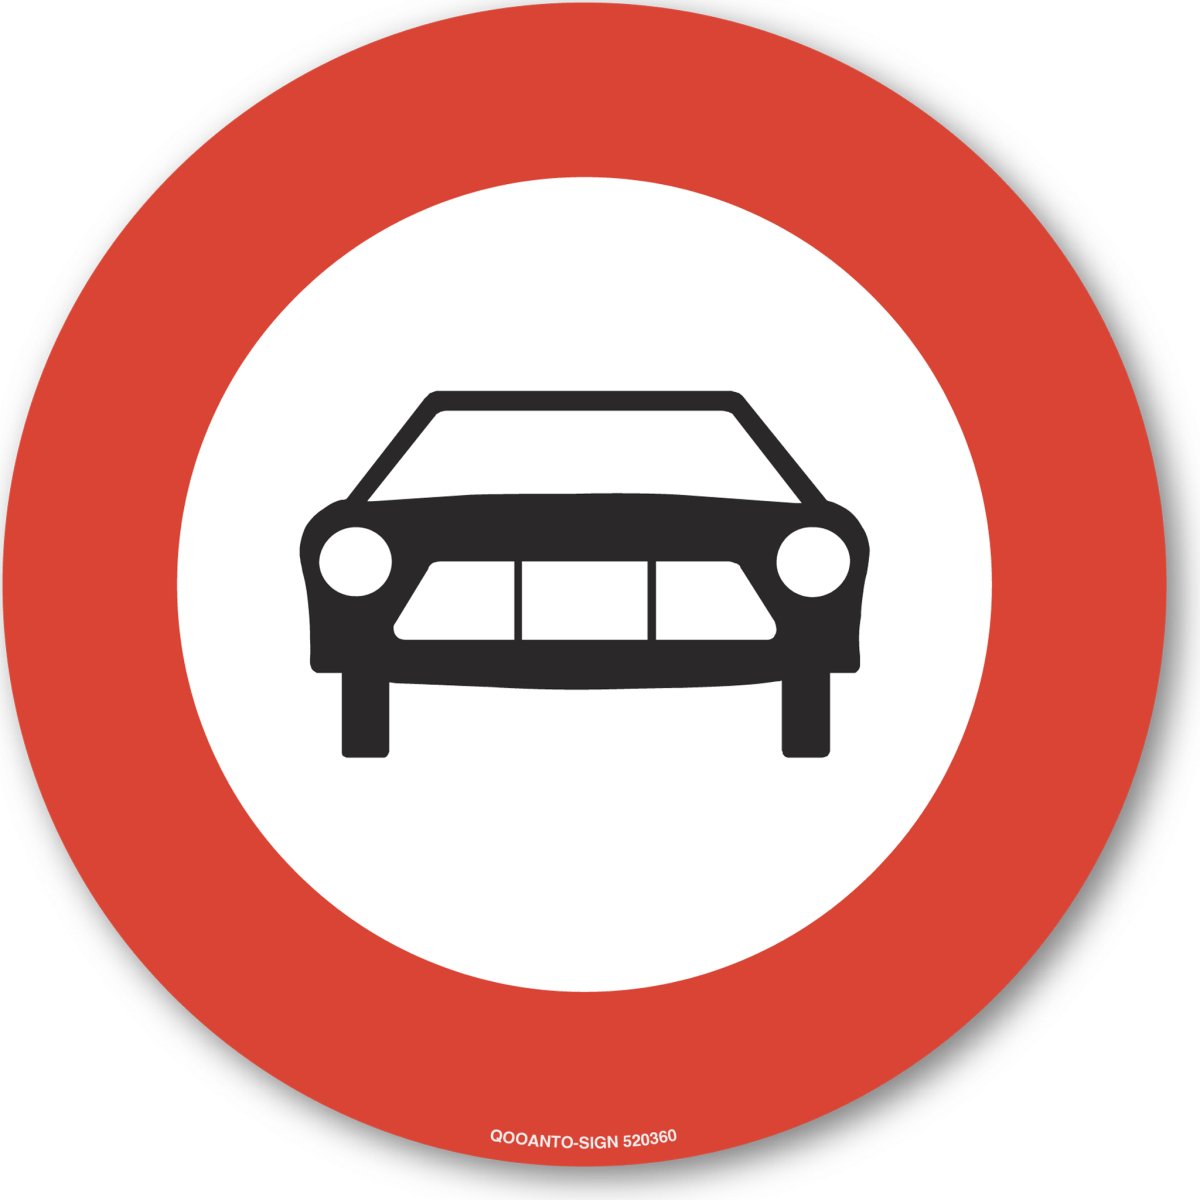 Verbot Für Motorwagen Verkehrsschild oder Aufkleber aus Alu-Verbund oder Selbstklebefolie mit UV-Schutz - QOOANTO-SIGN